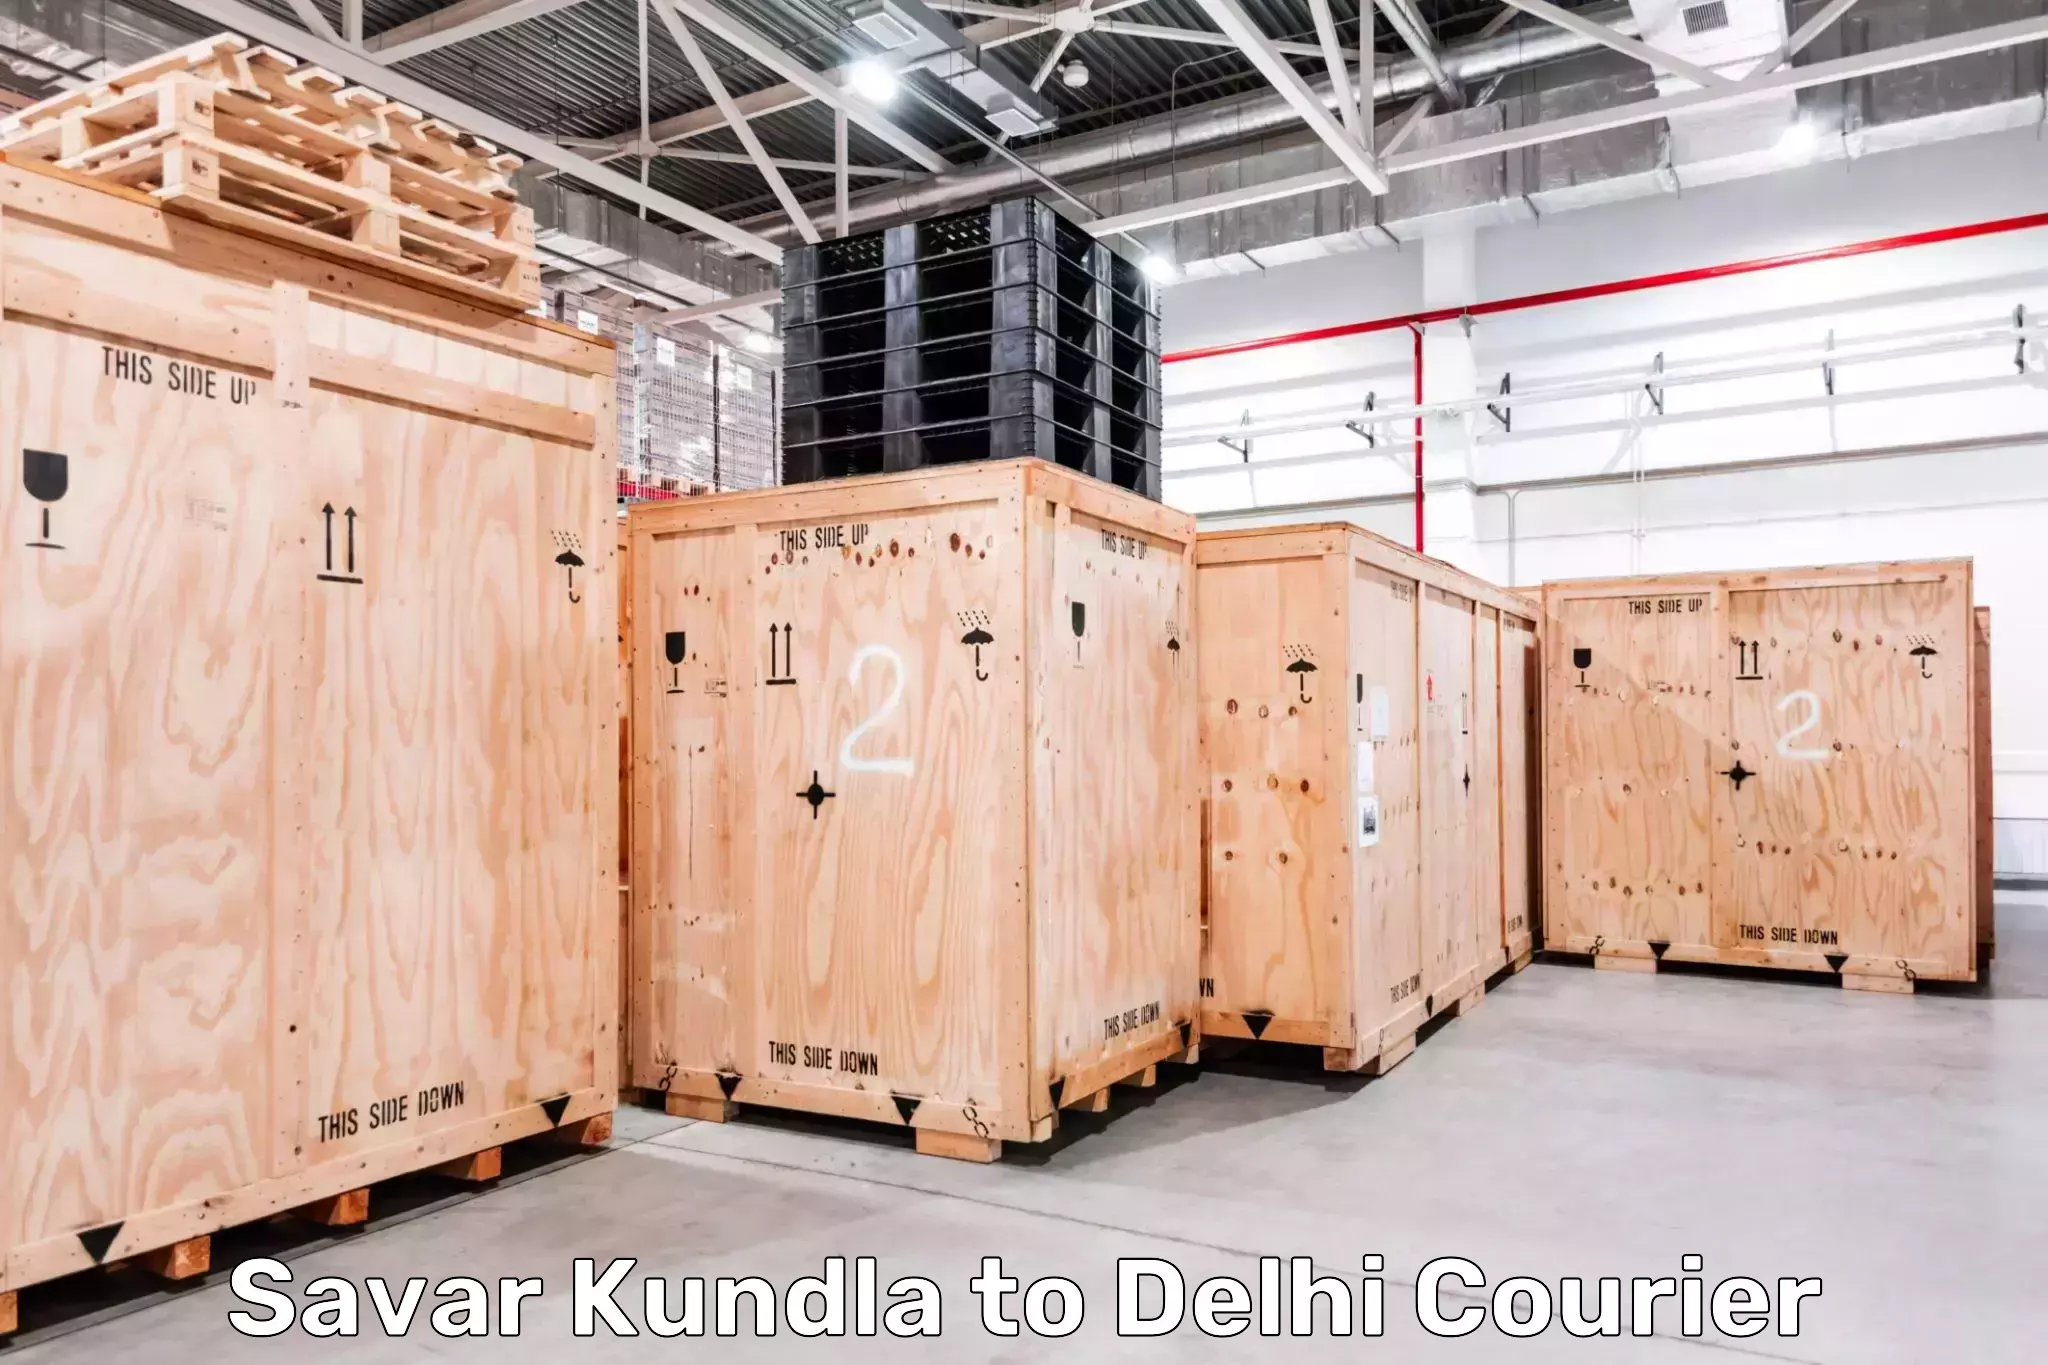 24/7 courier service Savar Kundla to East Delhi